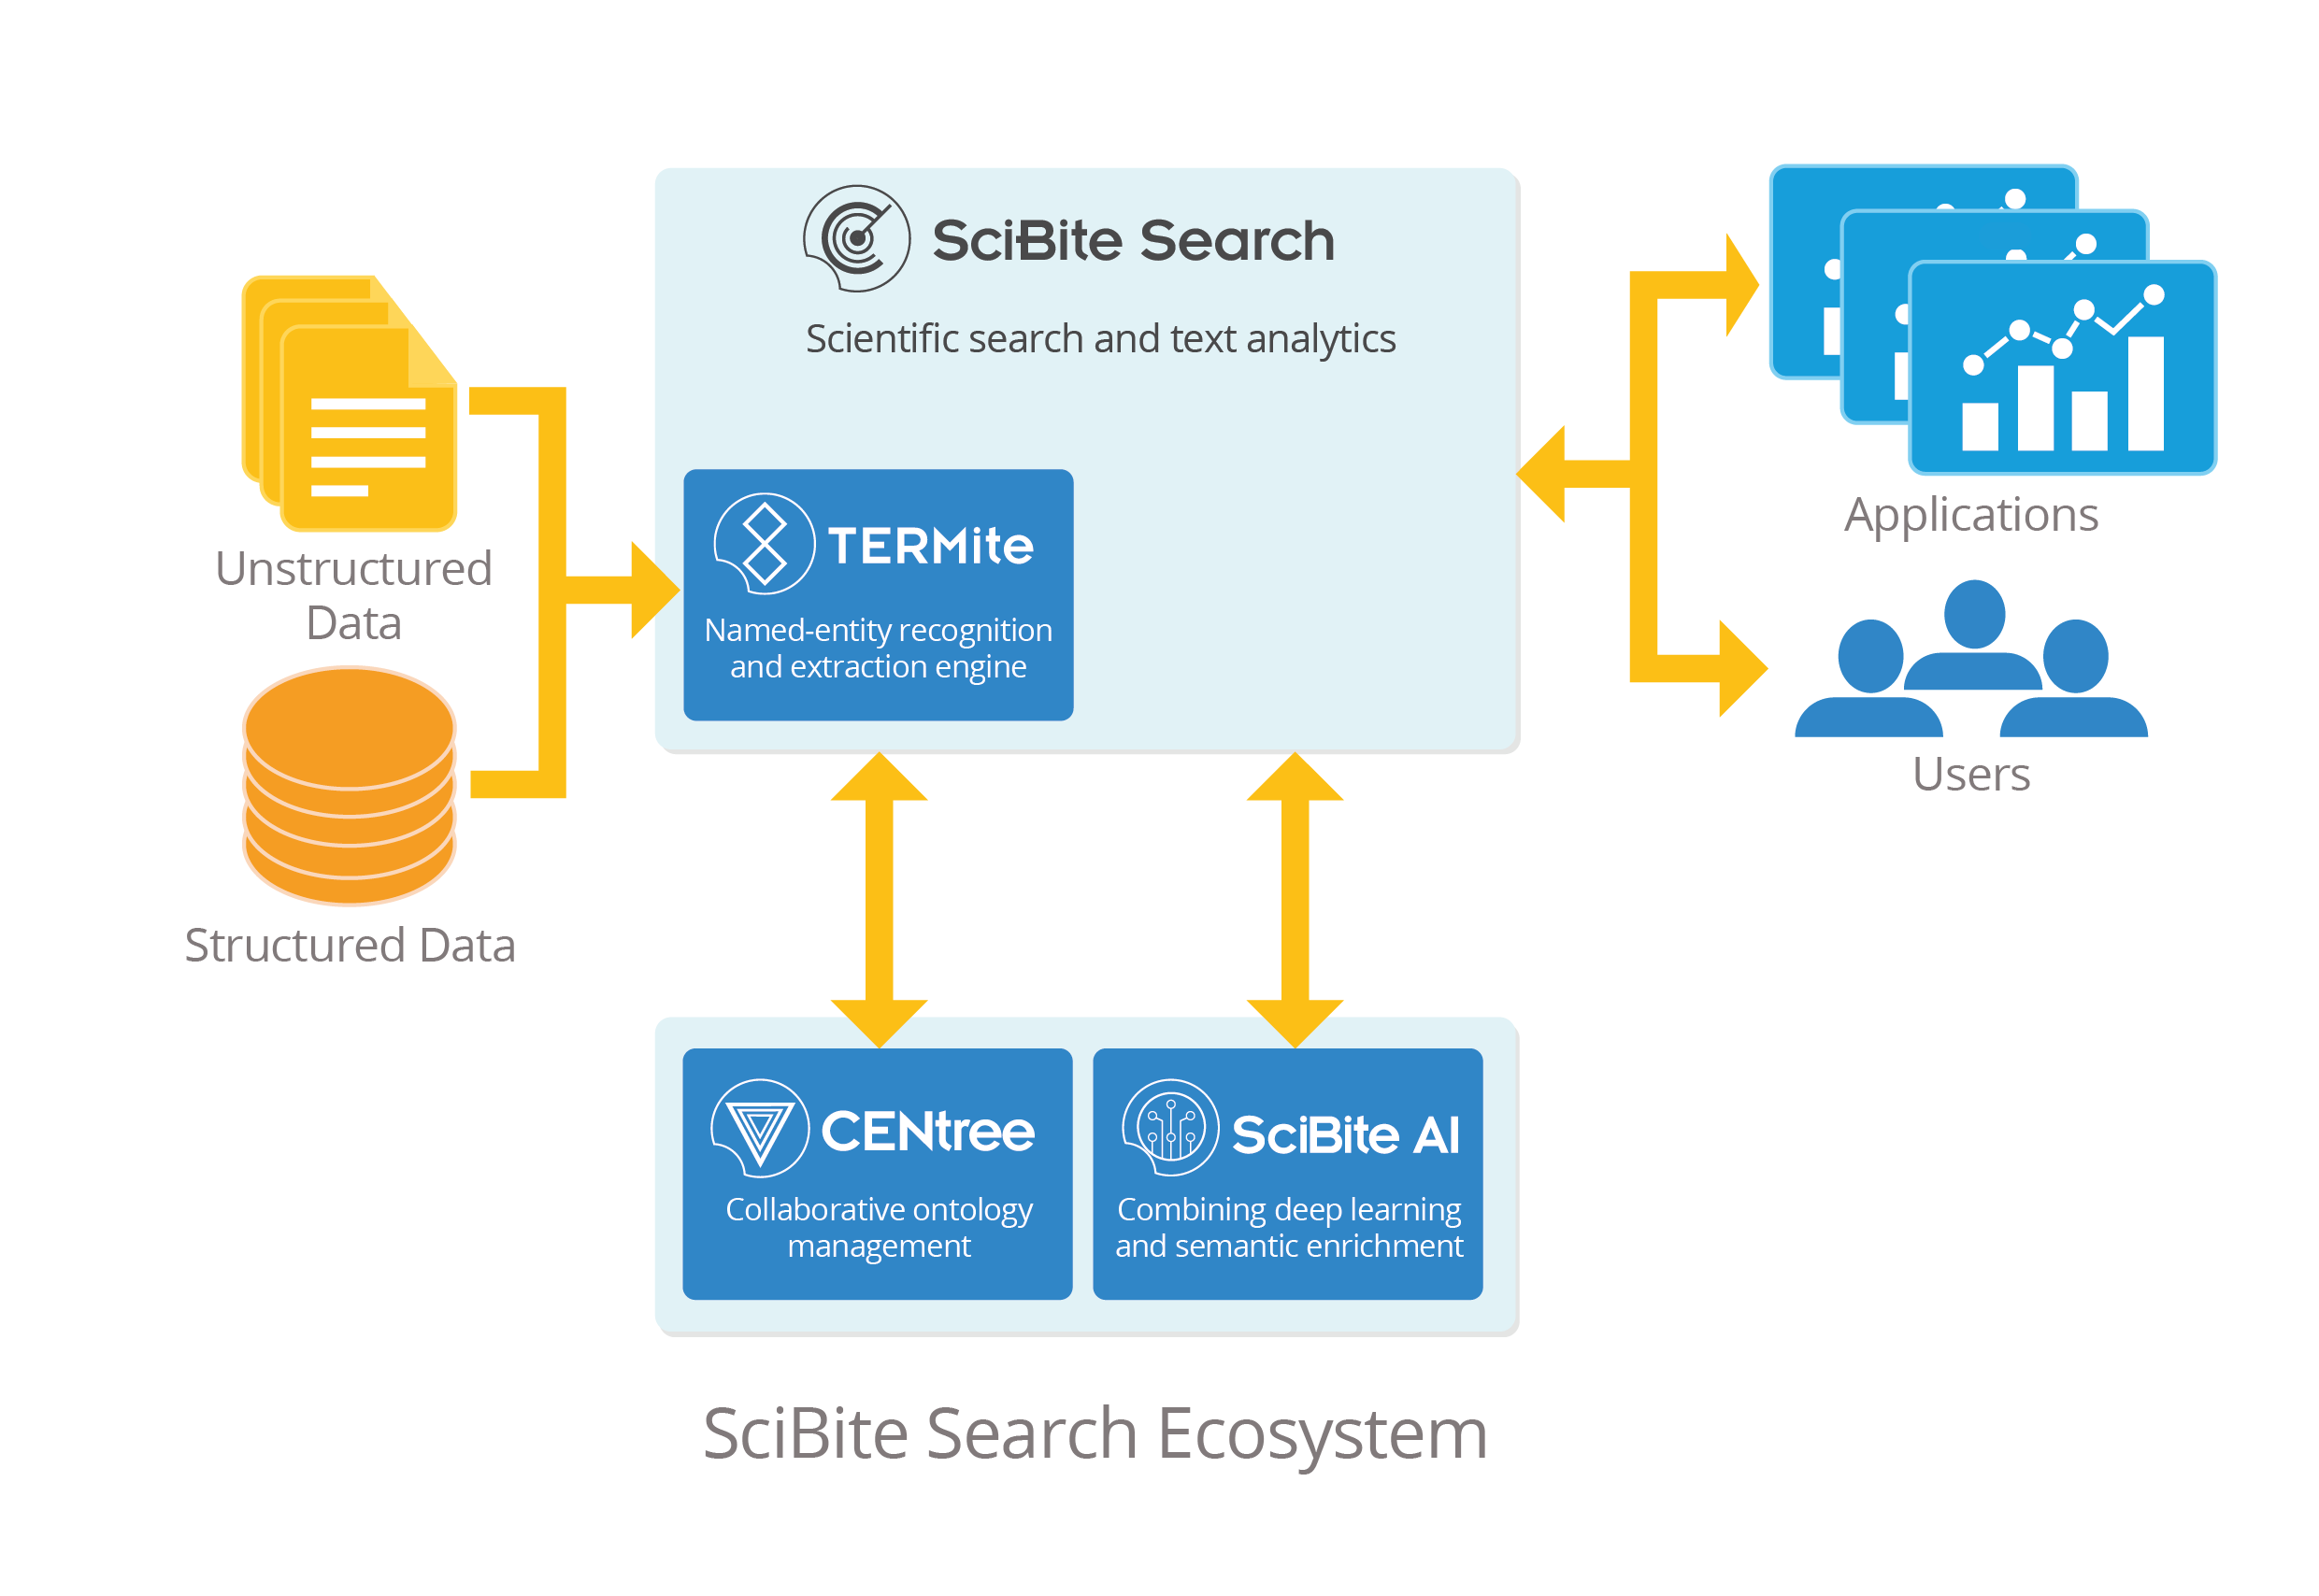 SciBite Search Ecosystem